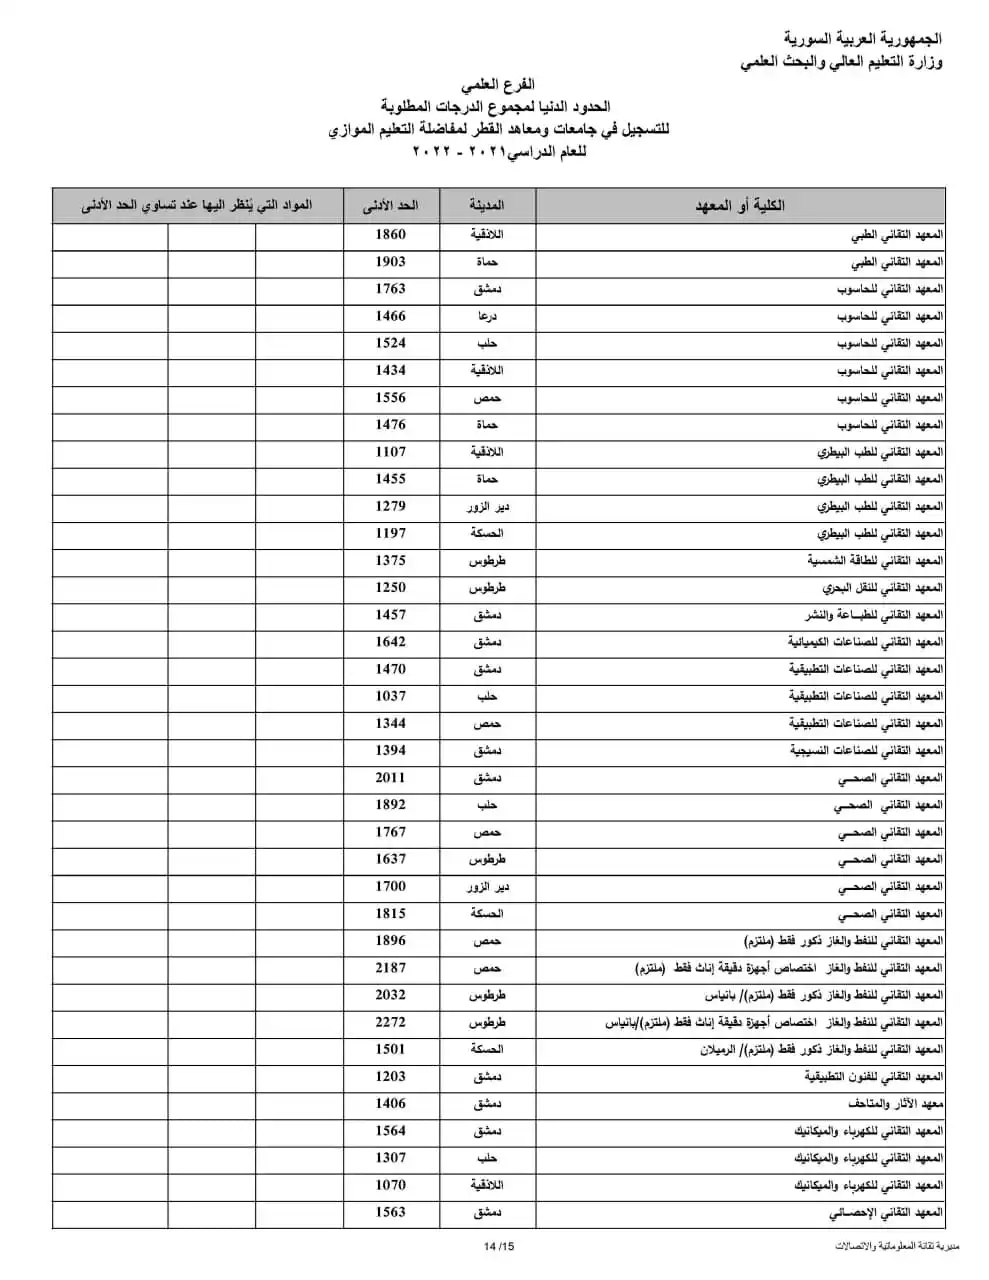 نتائج مفاضلة البكالوريا 2022 في سوريا الأن على موقع الوزارة الرسمي moed.gov.sy